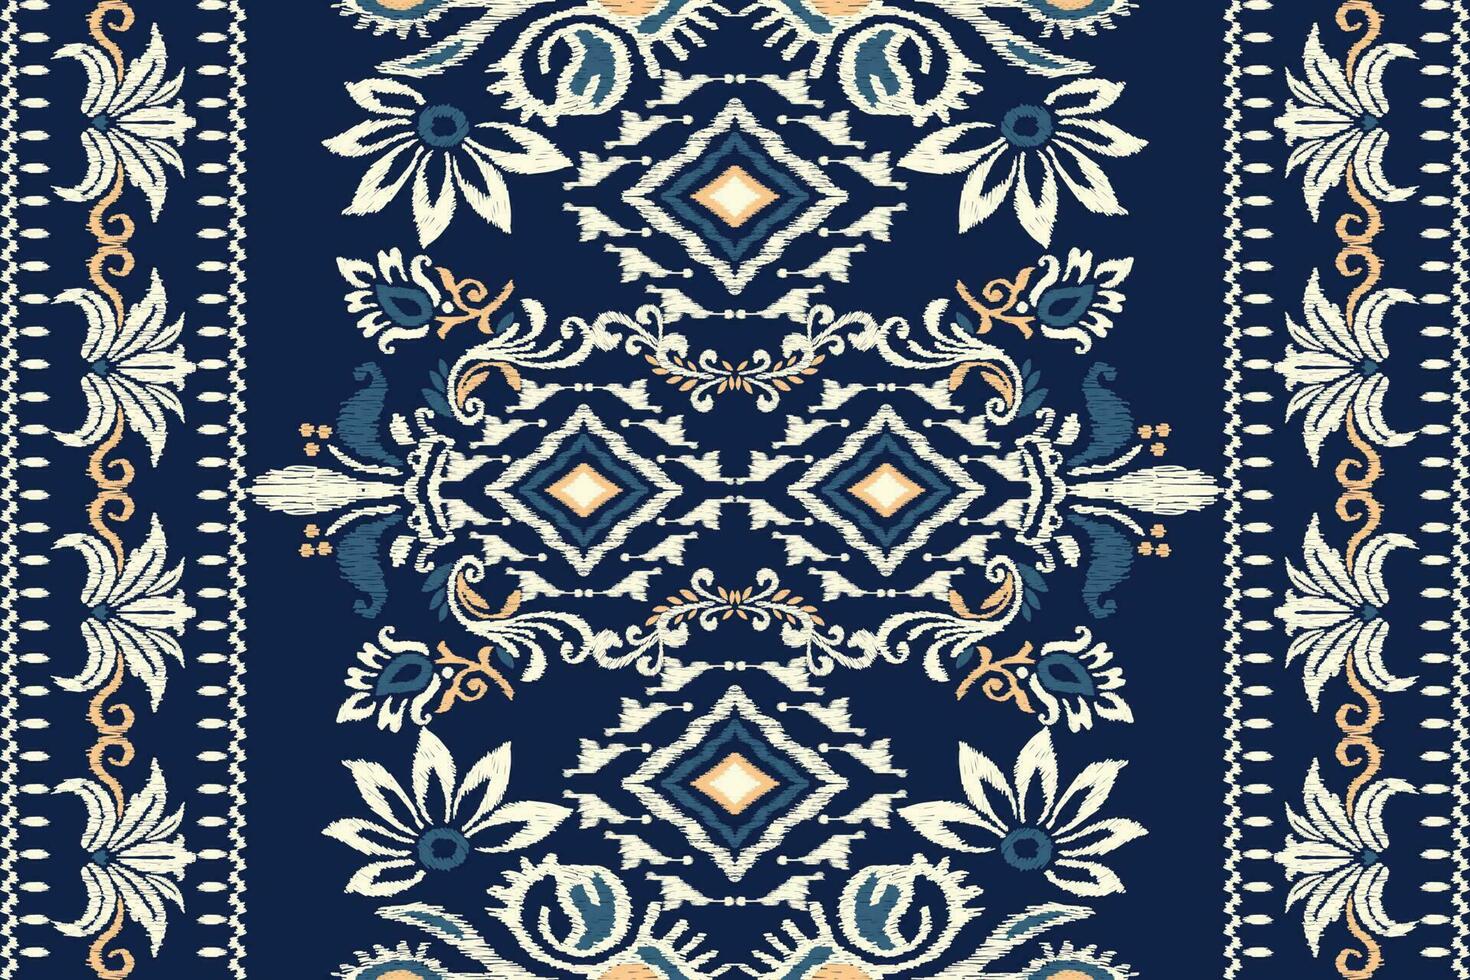 ikat bloemen paisley borduurwerk Aan marine blauw achtergrond.ikat etnisch oosters patroon traditioneel.azteken stijl abstract vector illustratie.ontwerp voor textuur,stof,kleding,verpakking,decoratie,tapijt.